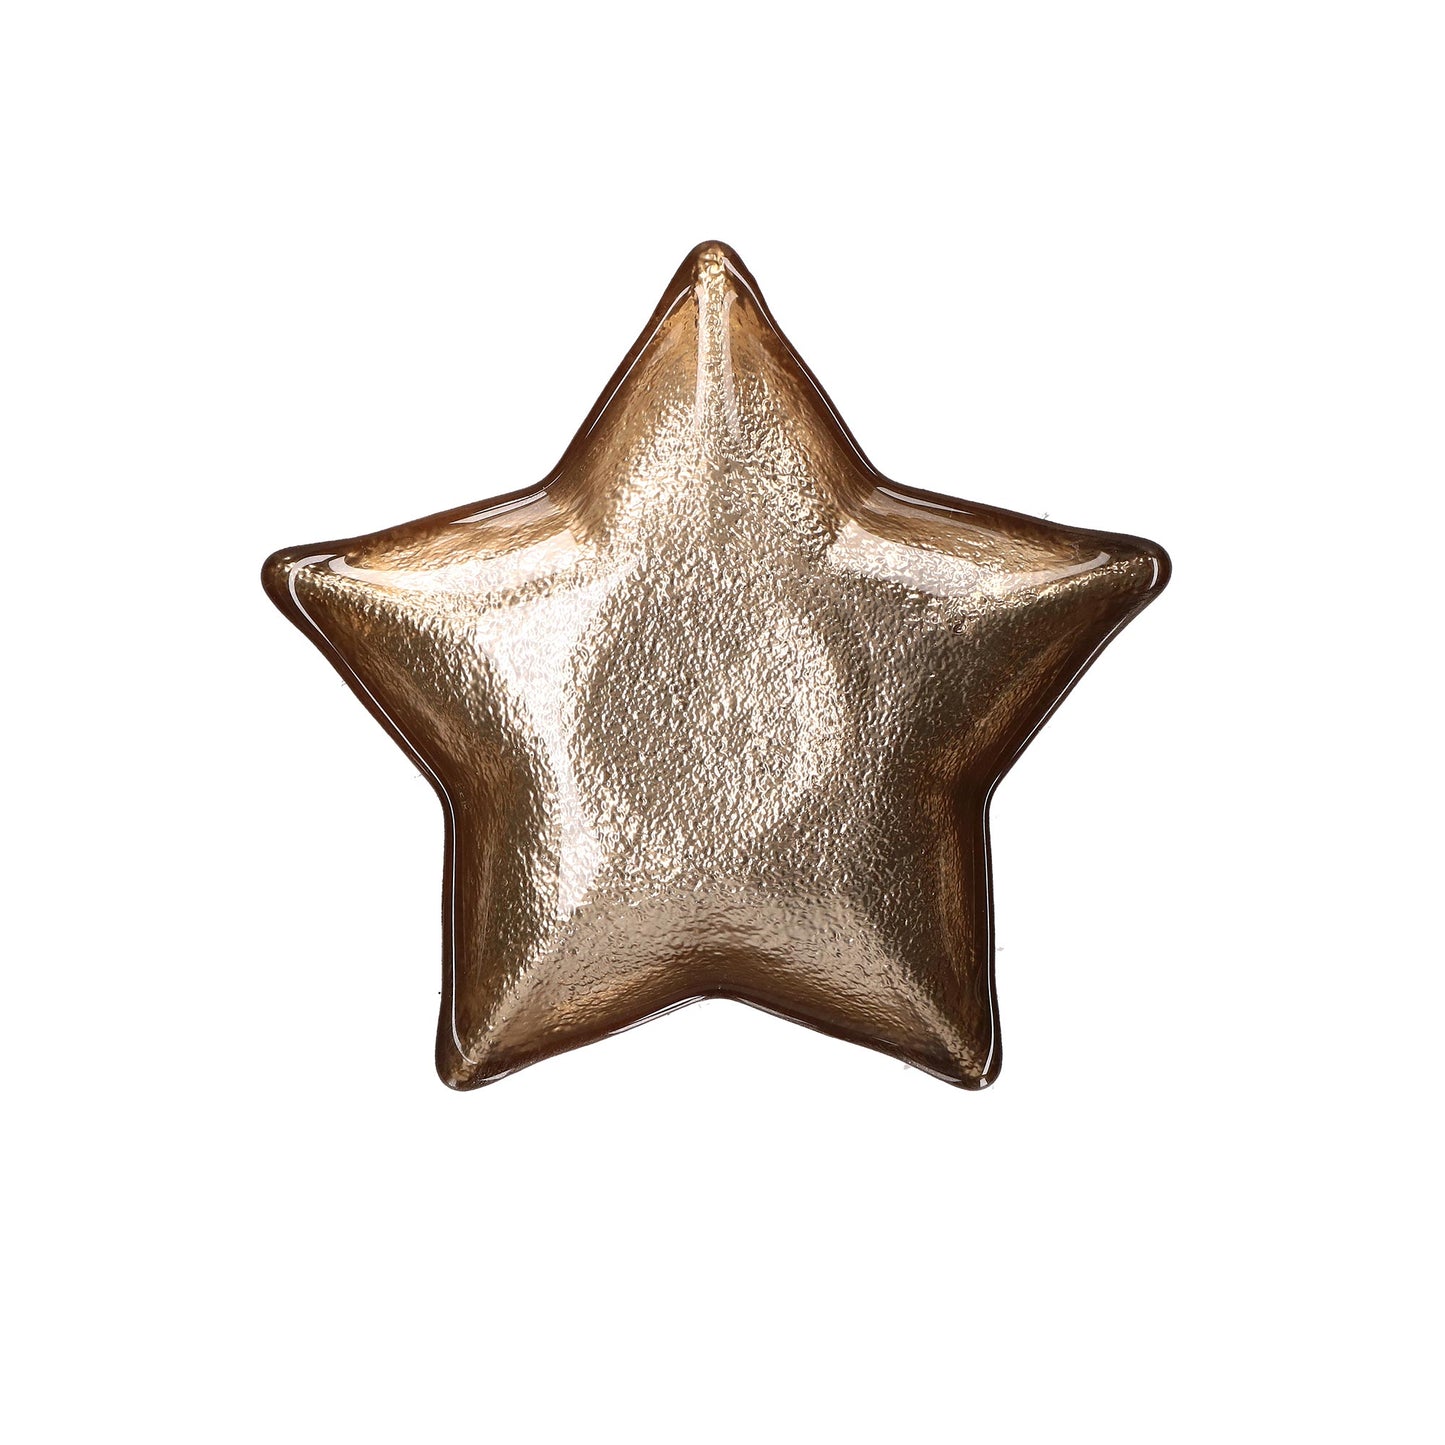 Piattino in vetro di colore oro a forma di stella. Dimensioni: Ø 16 cm. In negozio e online su tuttochic.it